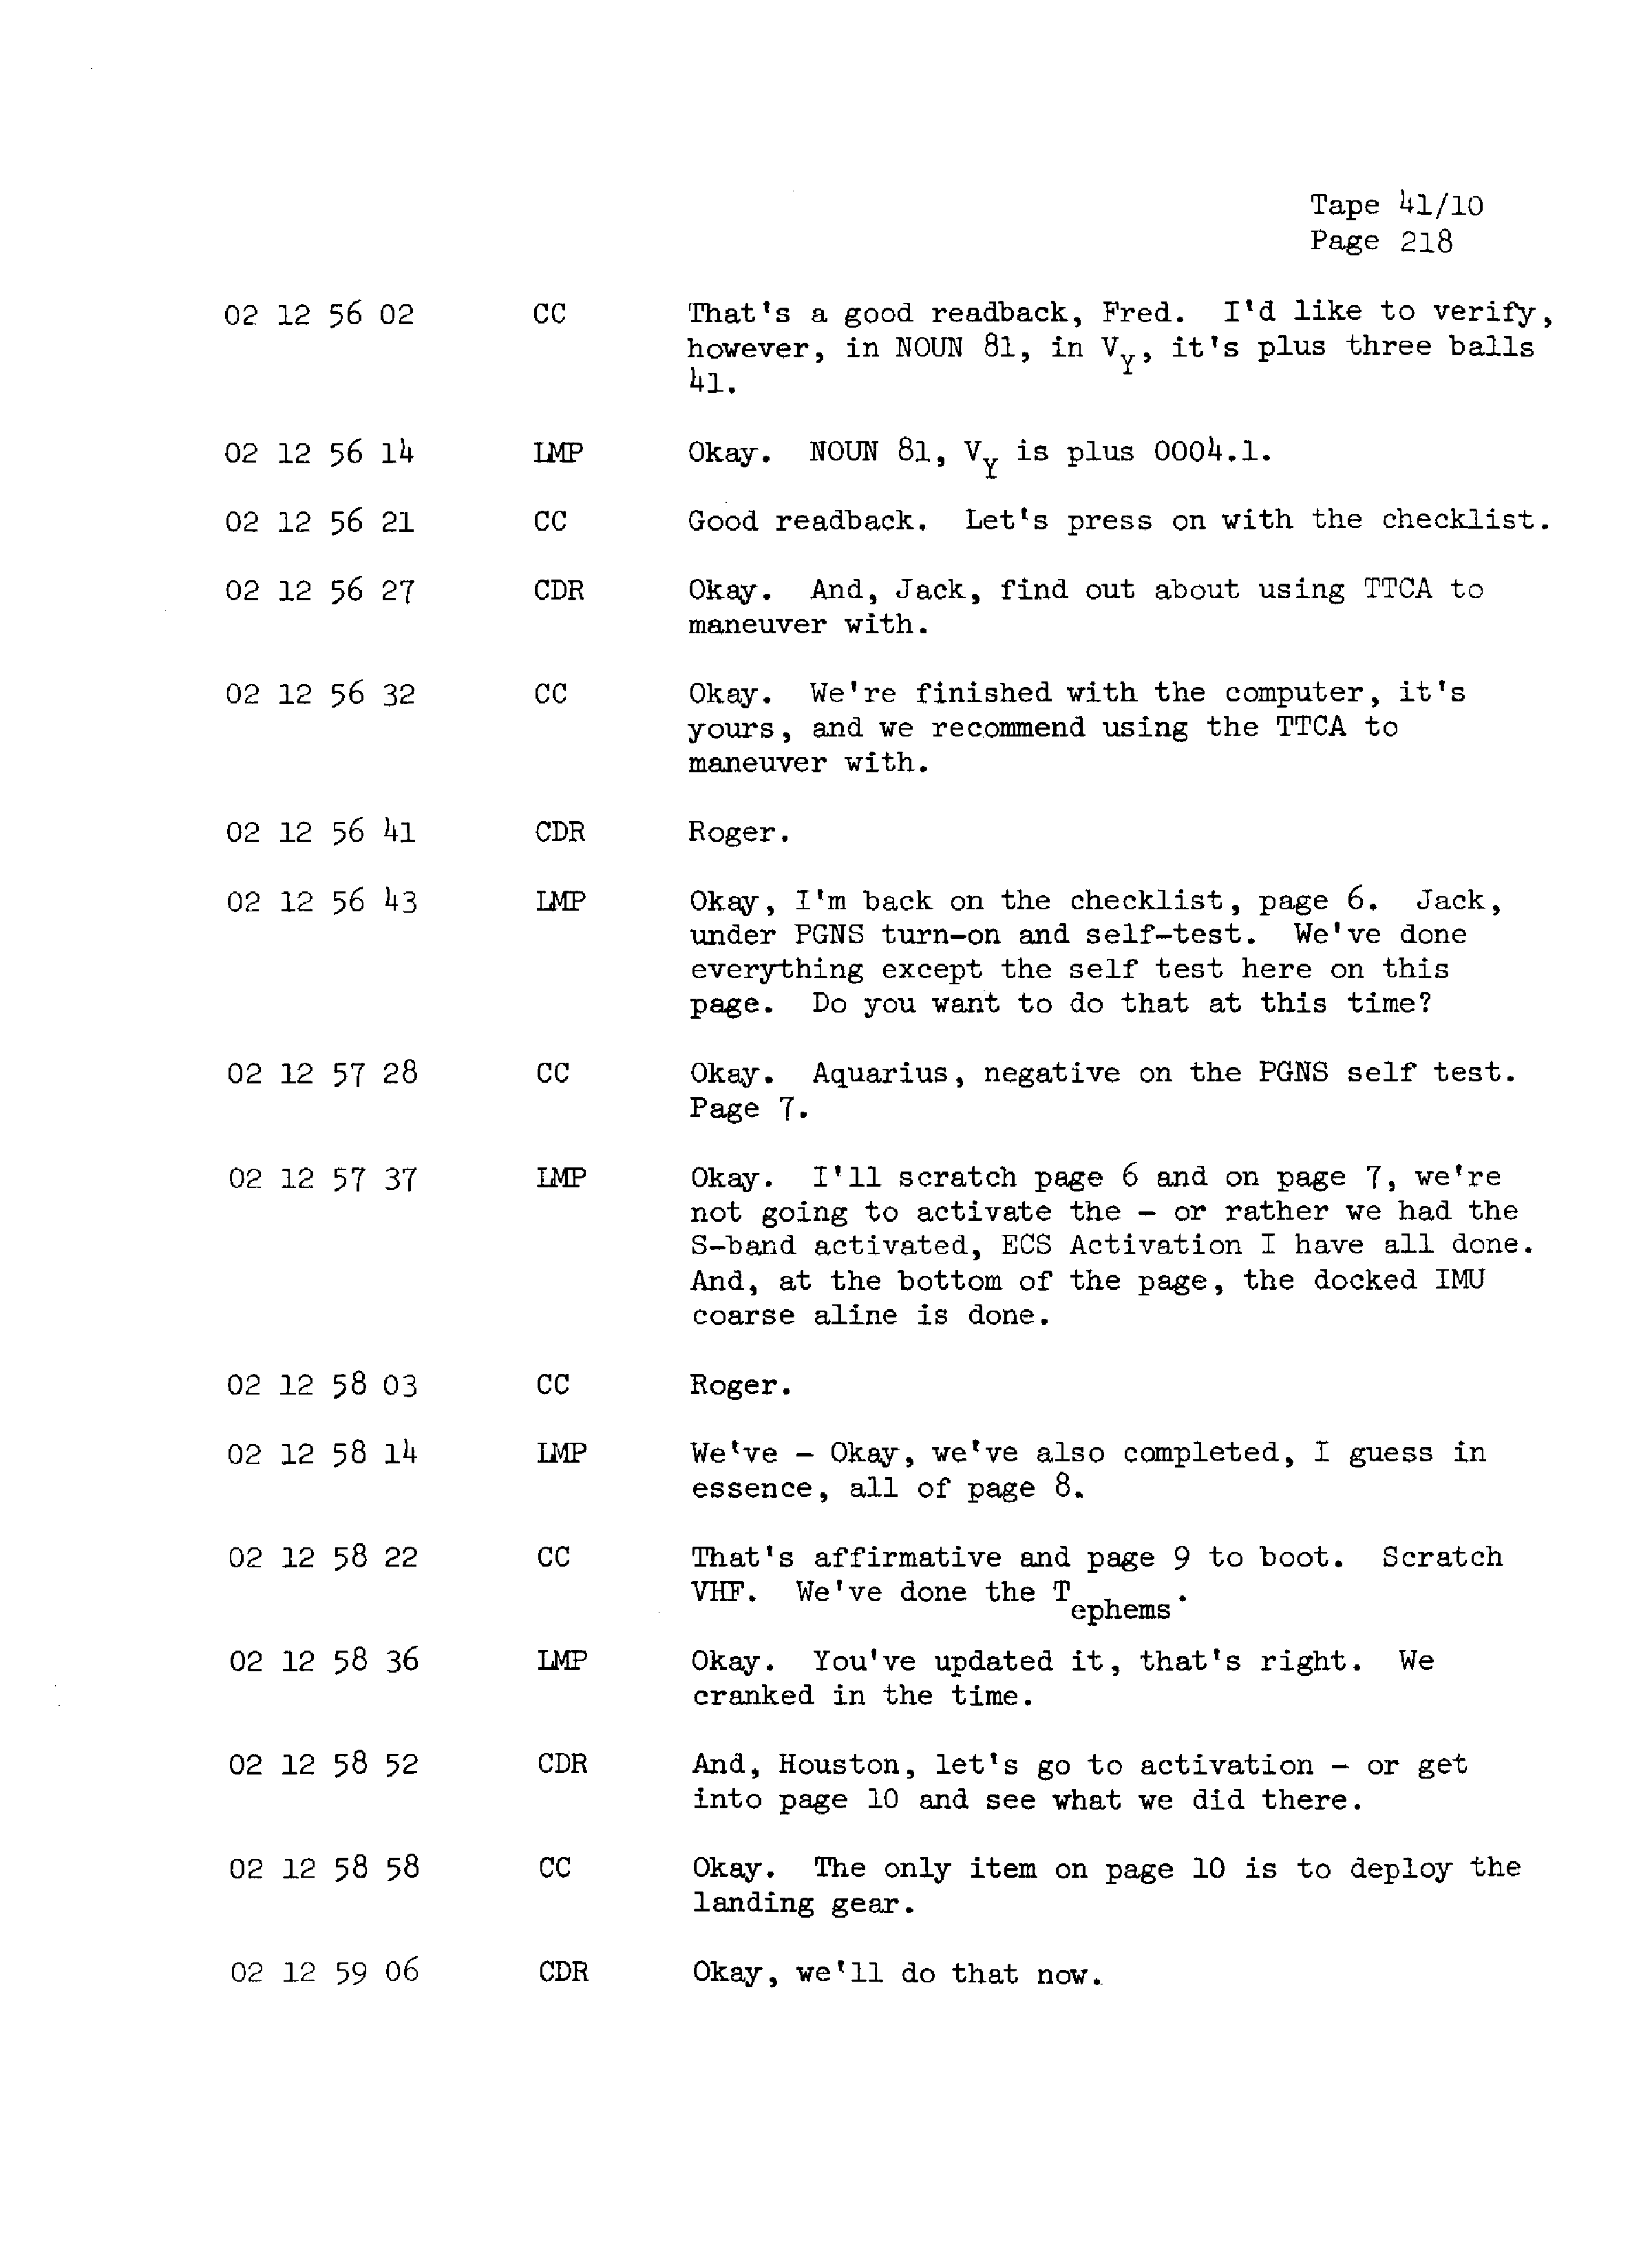 Page 225 of Apollo 13’s original transcript